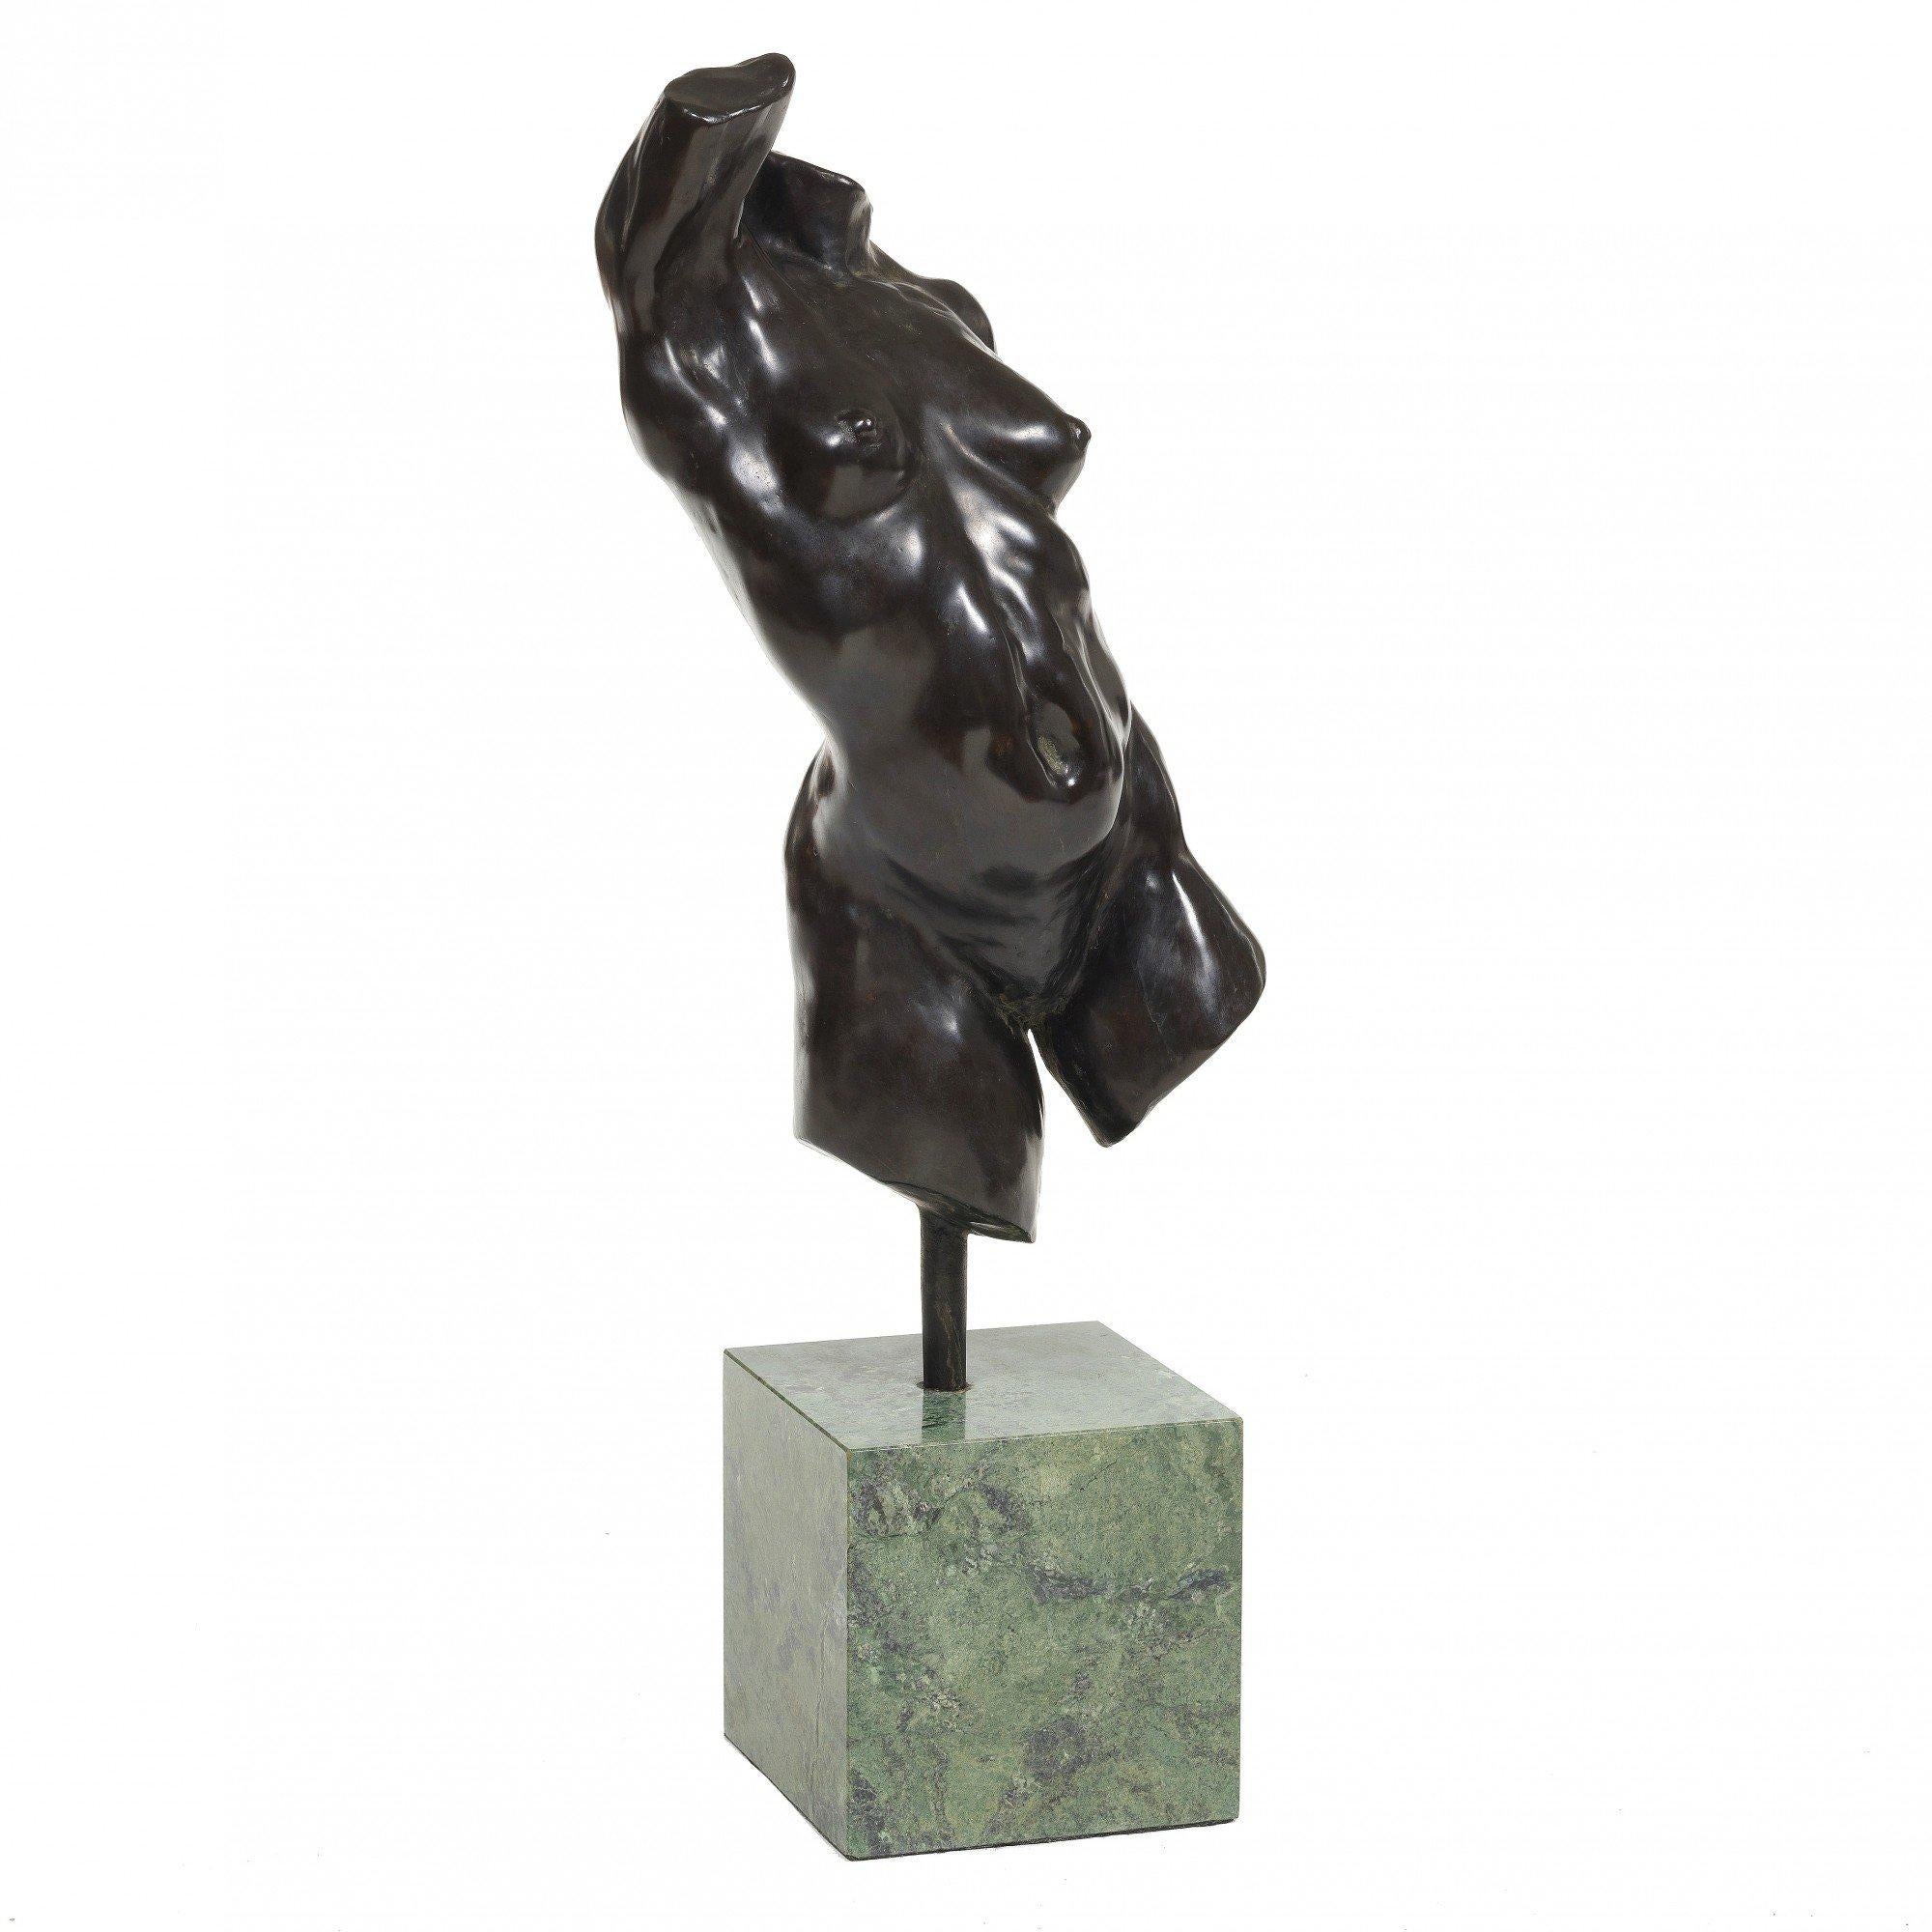 Alan Cottrill Figurative Sculpture – Nackter weiblicher Torso Bronzeskulptur, 20. Jahrhundert Zeitgenössischer amerikanischer Künstler